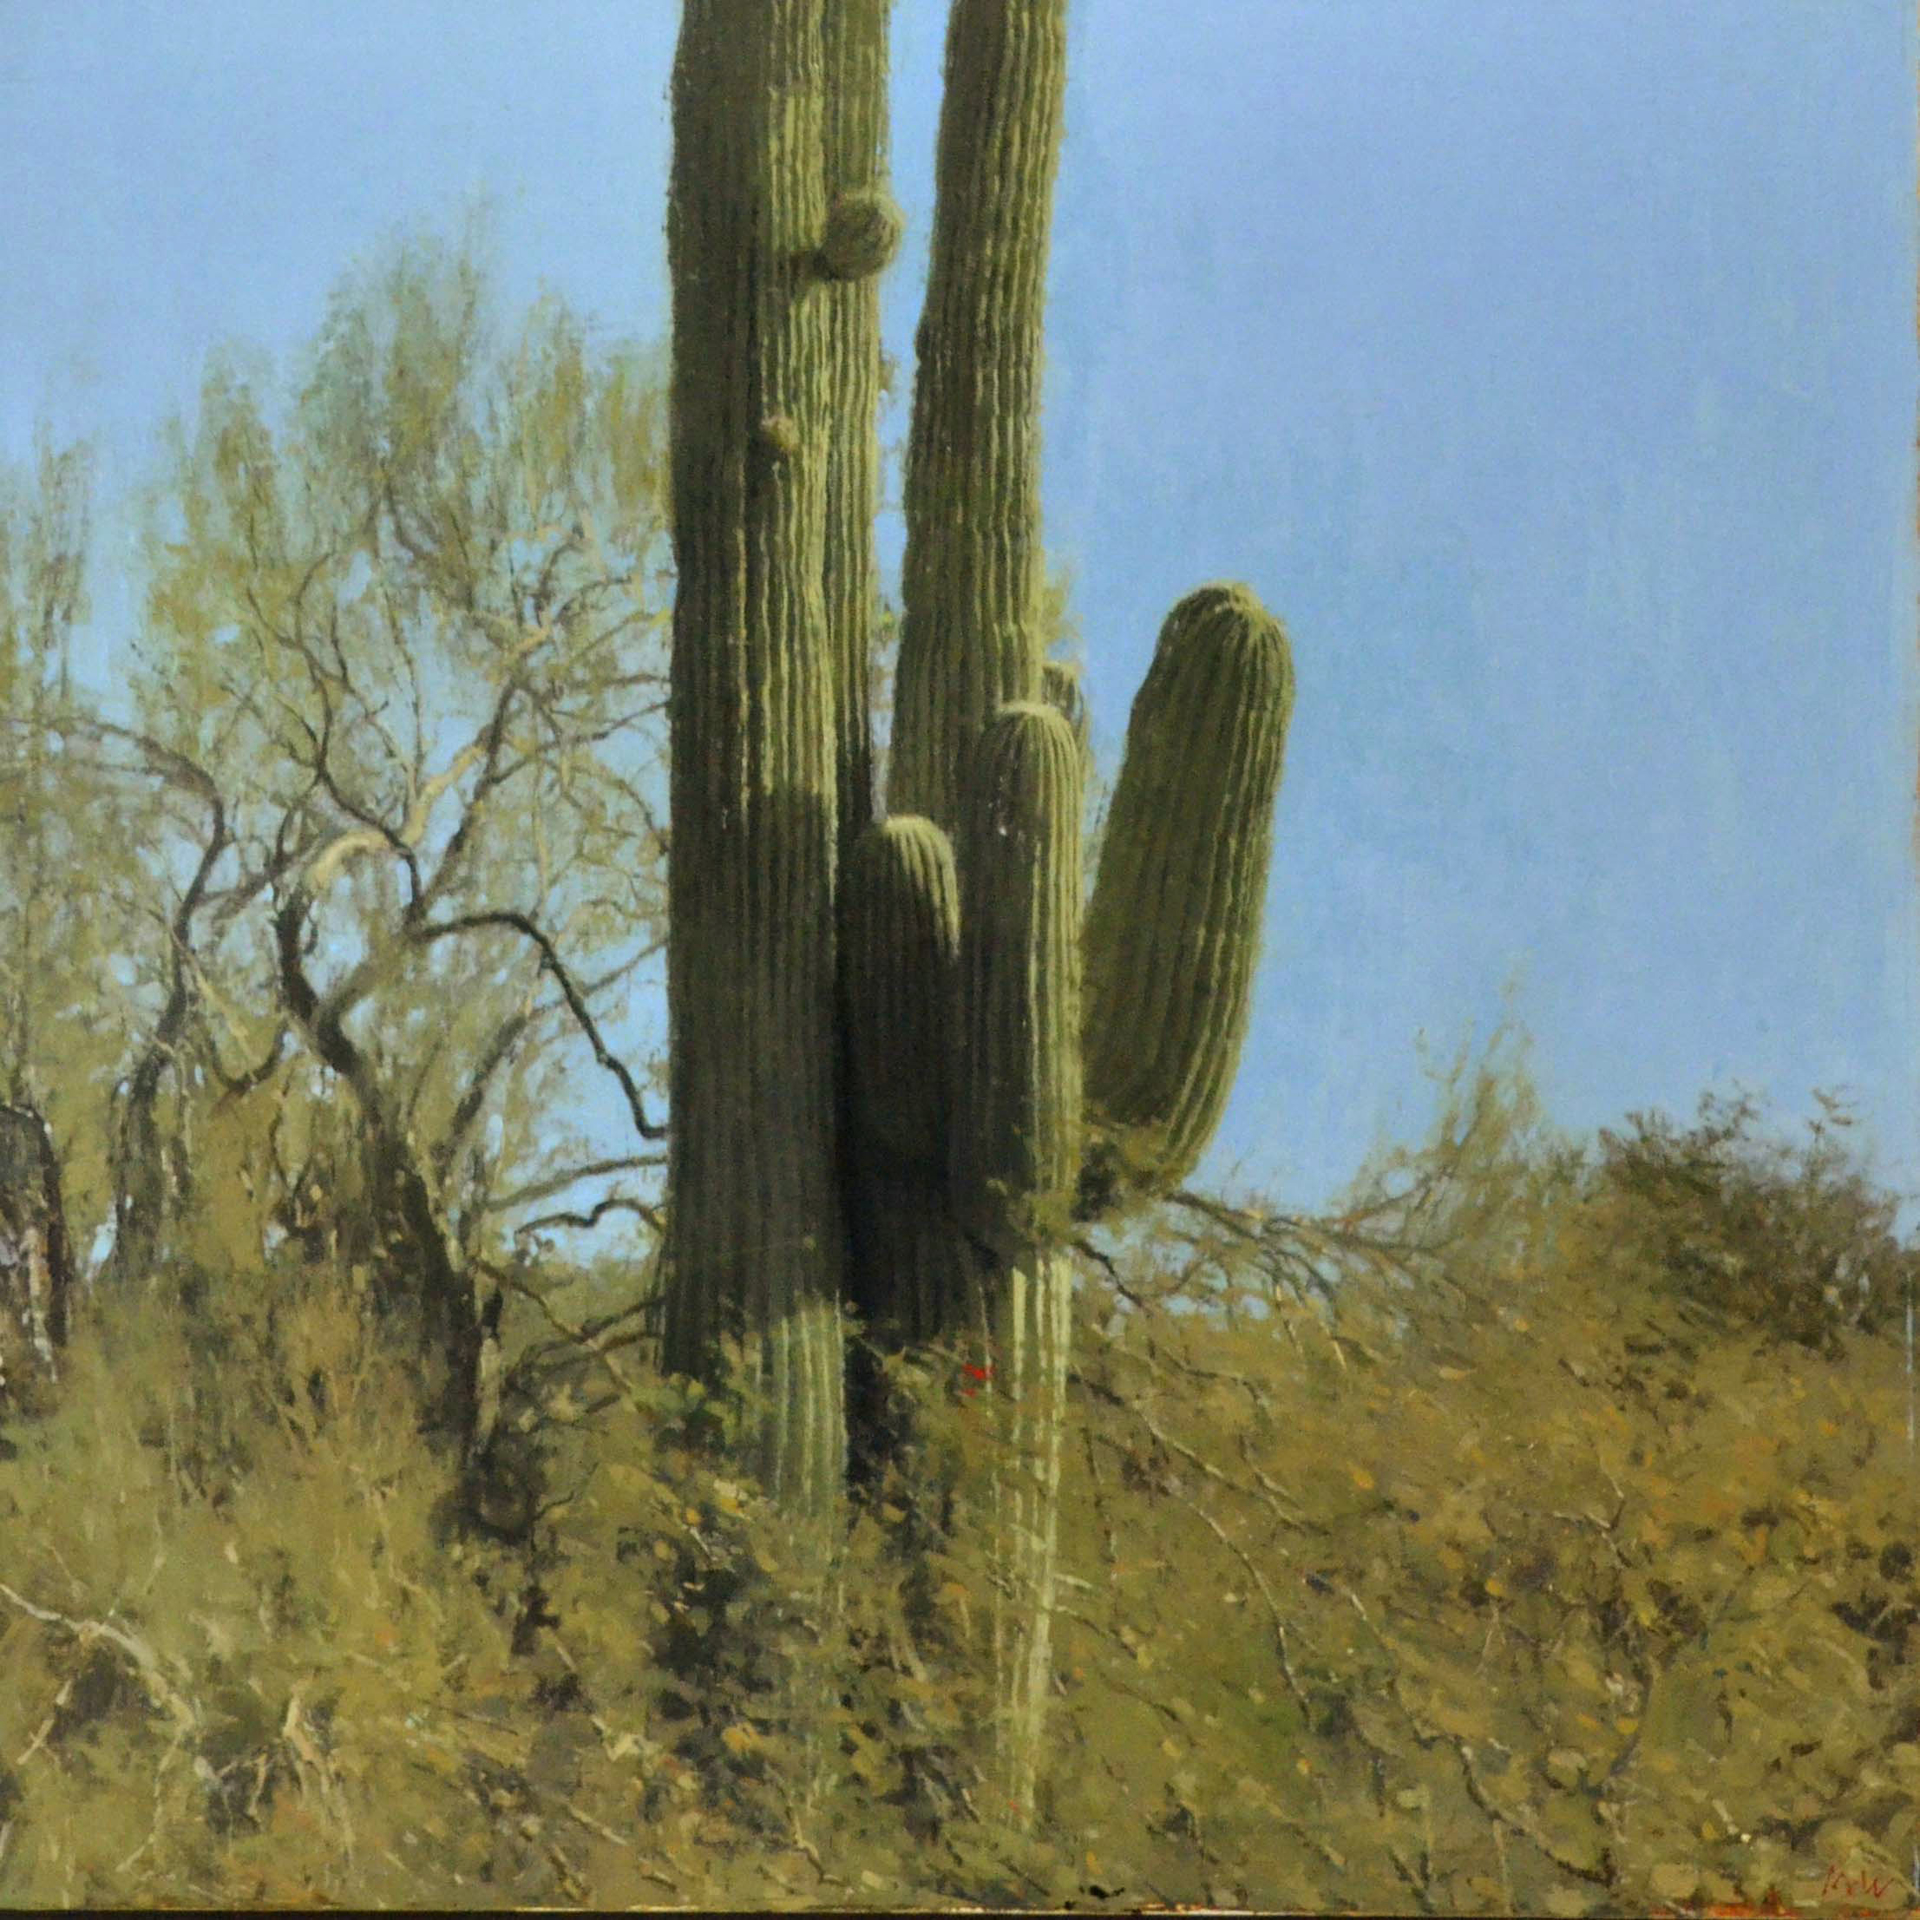 Saguaro by Michael Workman